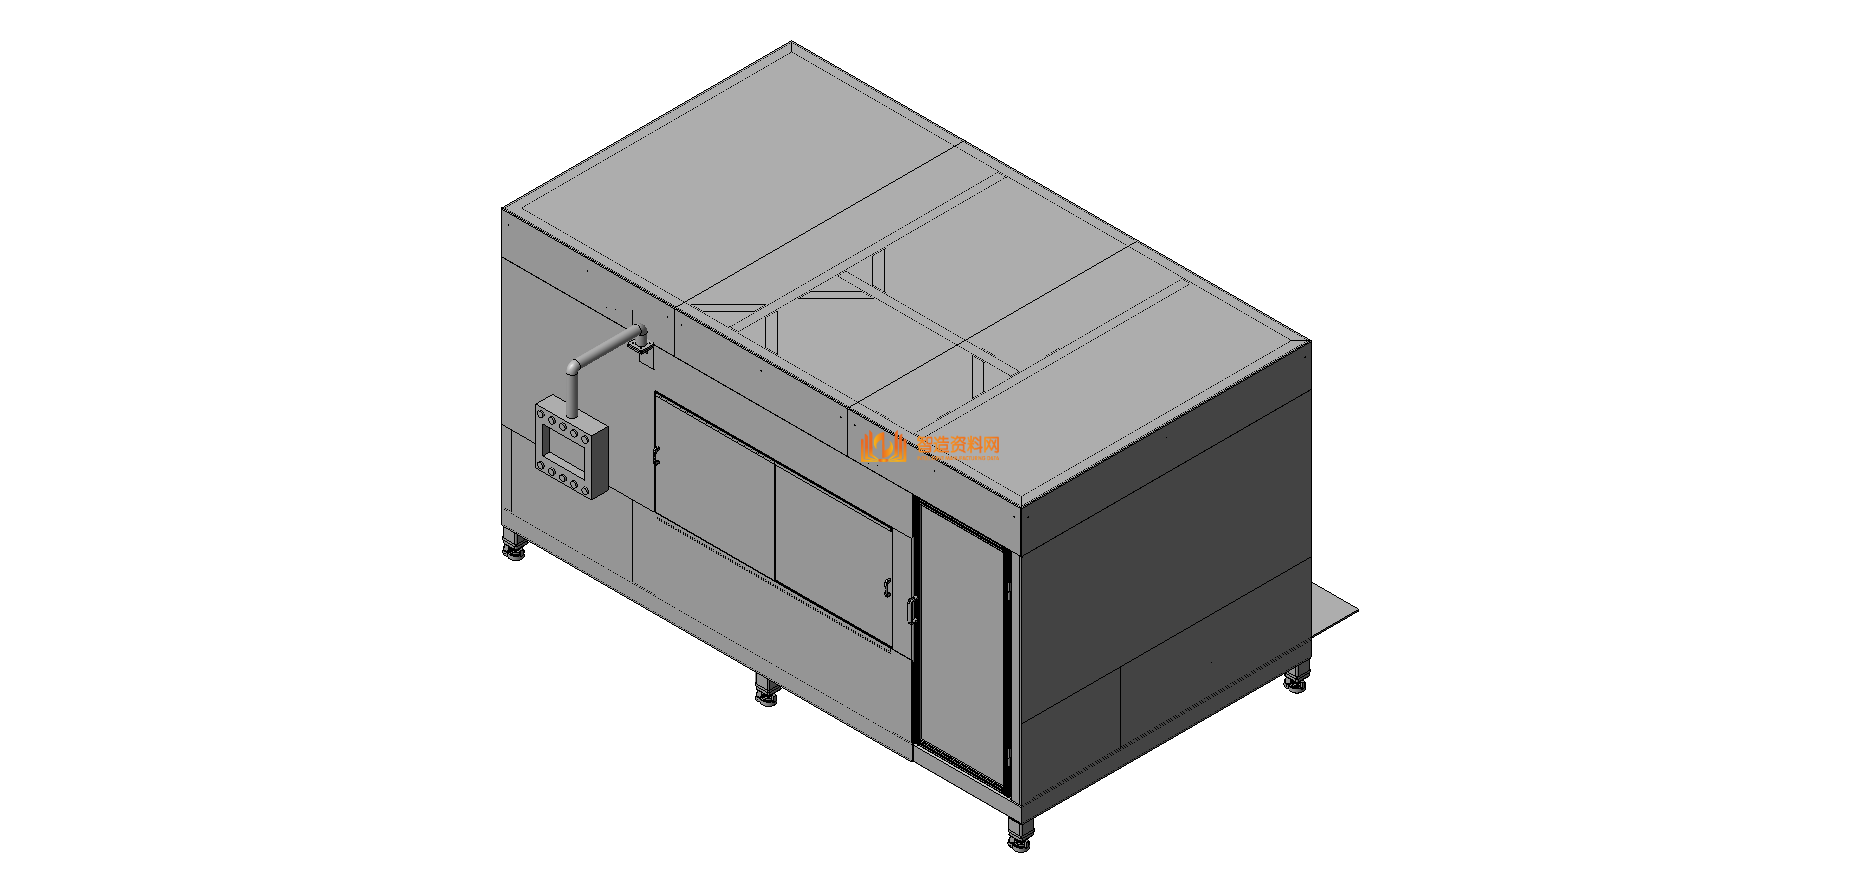 关节机自动开箱装箱一体机,XSJXSB_SW_0128.png,NeadPay,自动,第1张